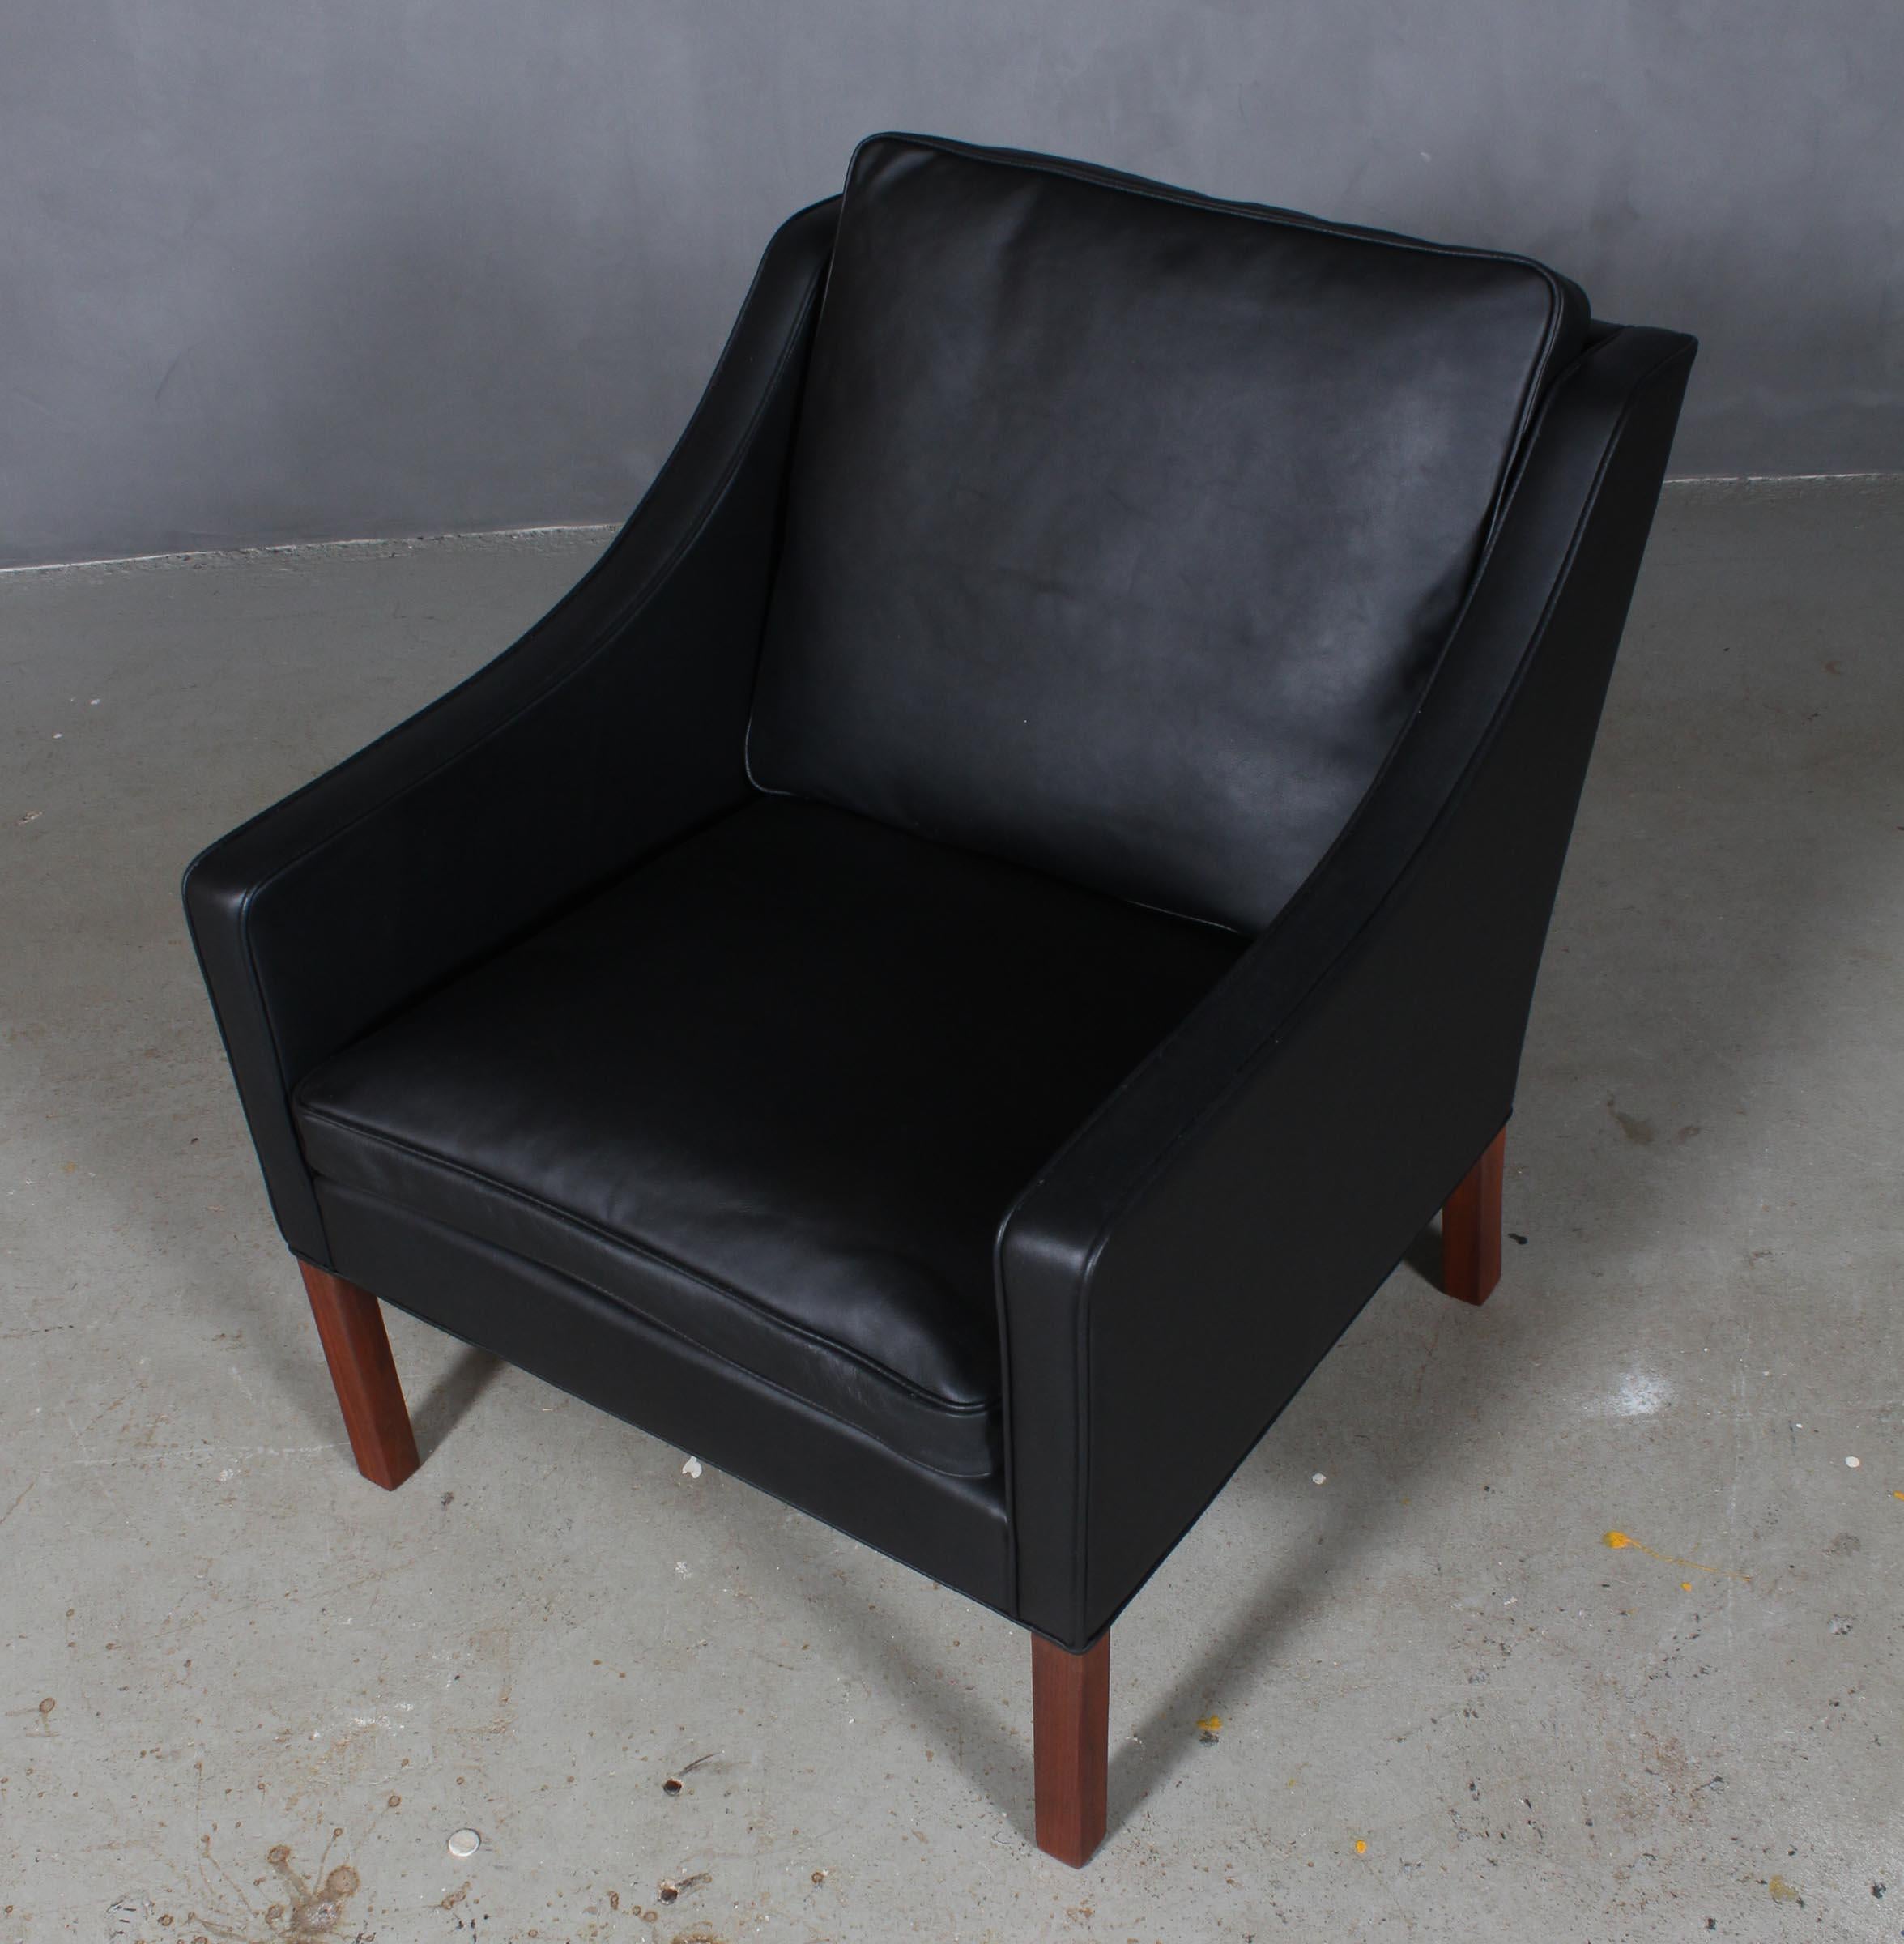 Chaise de salon Børge Mogensen nouvellement recouverte de cuir aniline noir élégant.

Pieds en teck.

Modèle 2207, fabriqué par les meubles Fredericia.